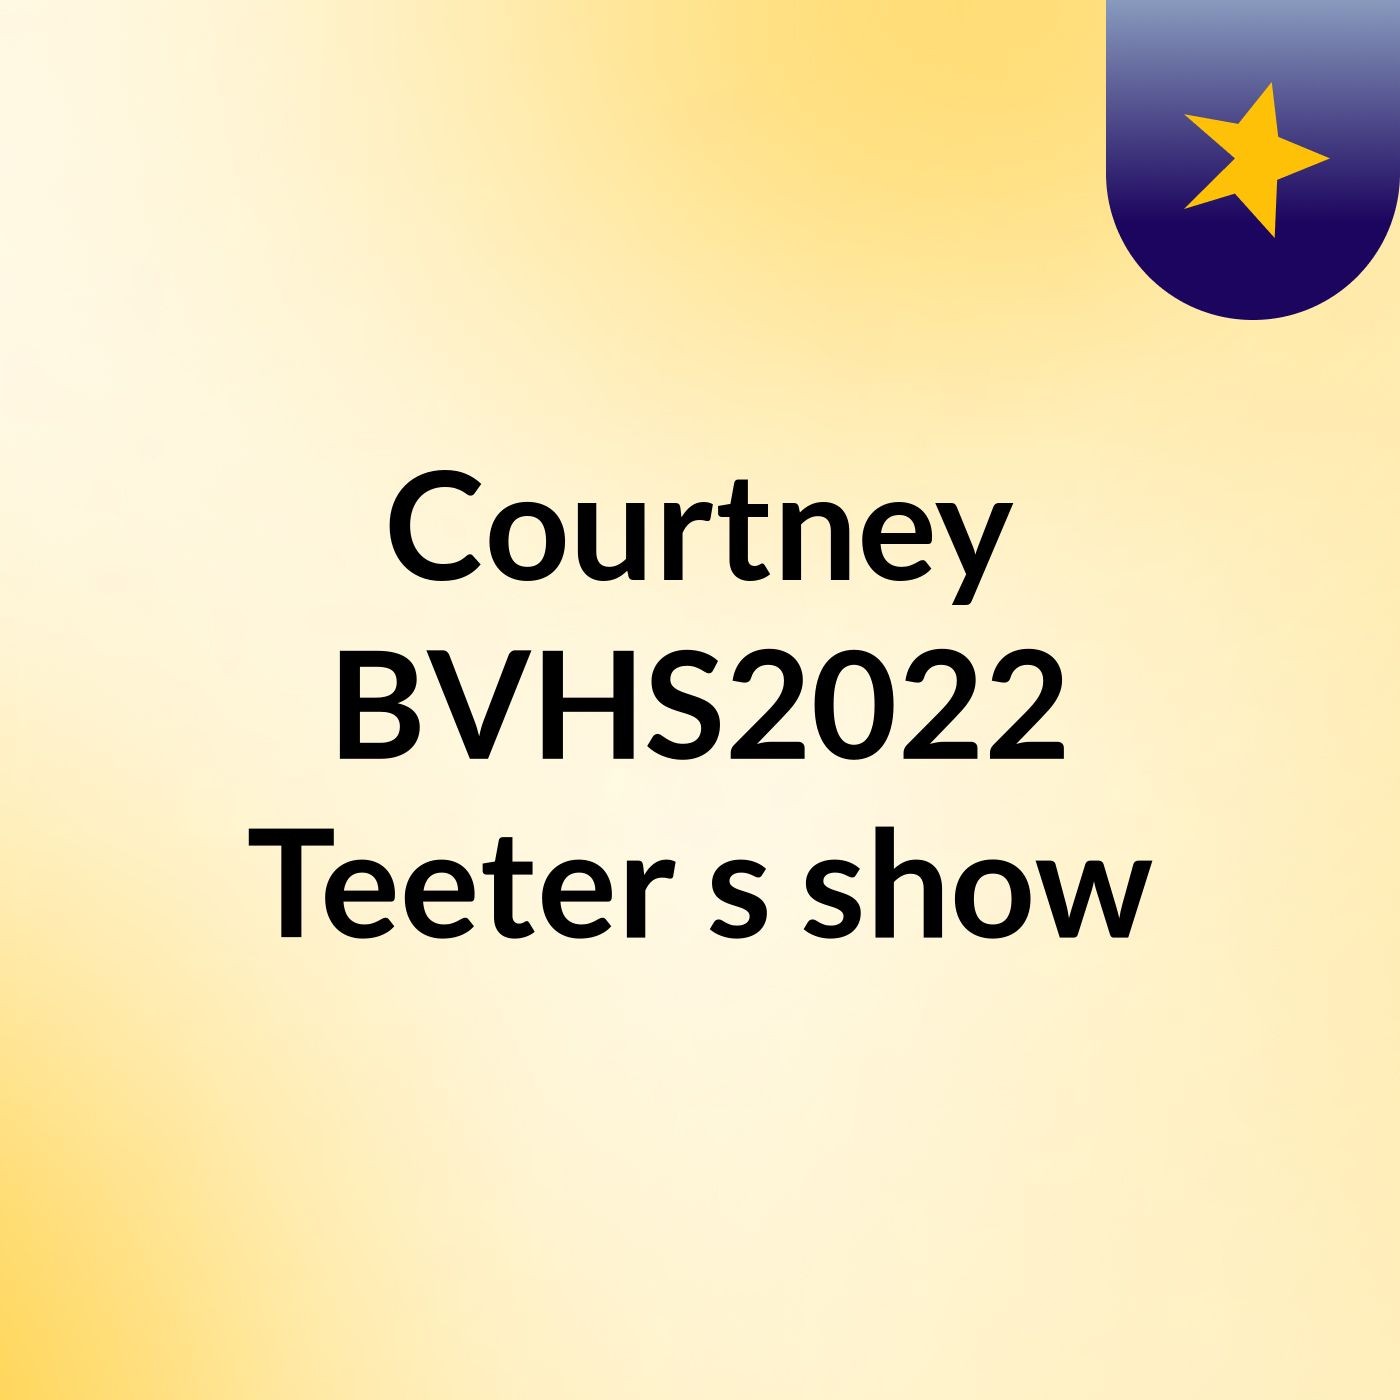 Courtney BVHS2022 Teeter's show